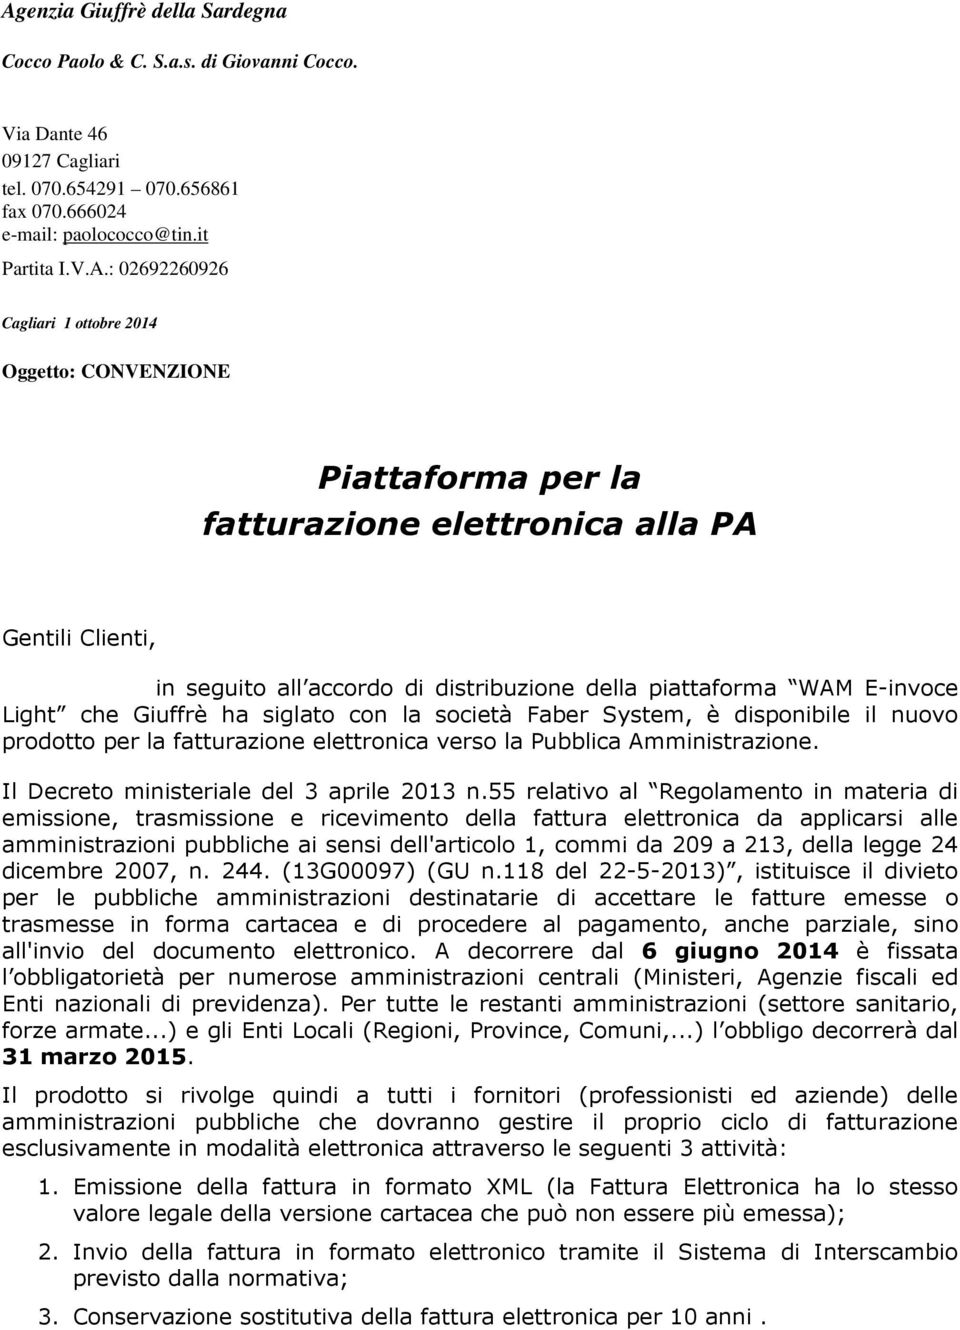 Giuffrè ha siglato con la società Faber System, è disponibile il nuovo prodotto per la fatturazione elettronica verso la Pubblica Amministrazione. Il Decreto ministeriale del 3 aprile 2013 n.